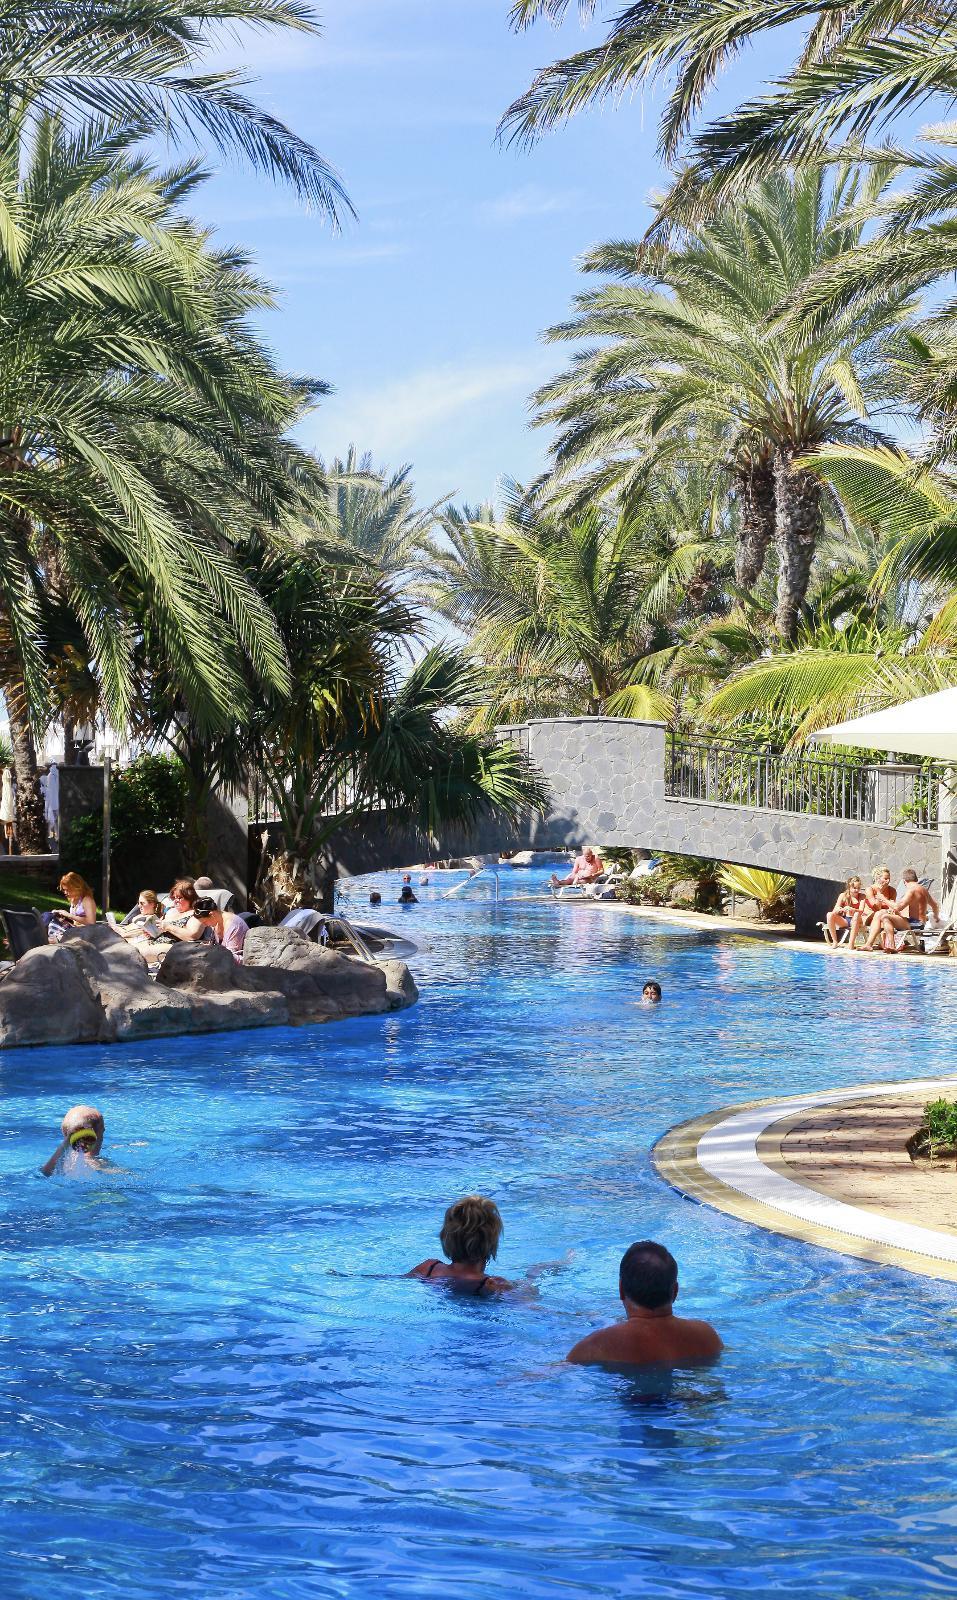 LUKSUS: Ving lanserer nytt luksushotell med suiter, flere badebasseng og egen strandlinje i desember. Dette bildet er fra et barnefritt hotell i Meloneras.